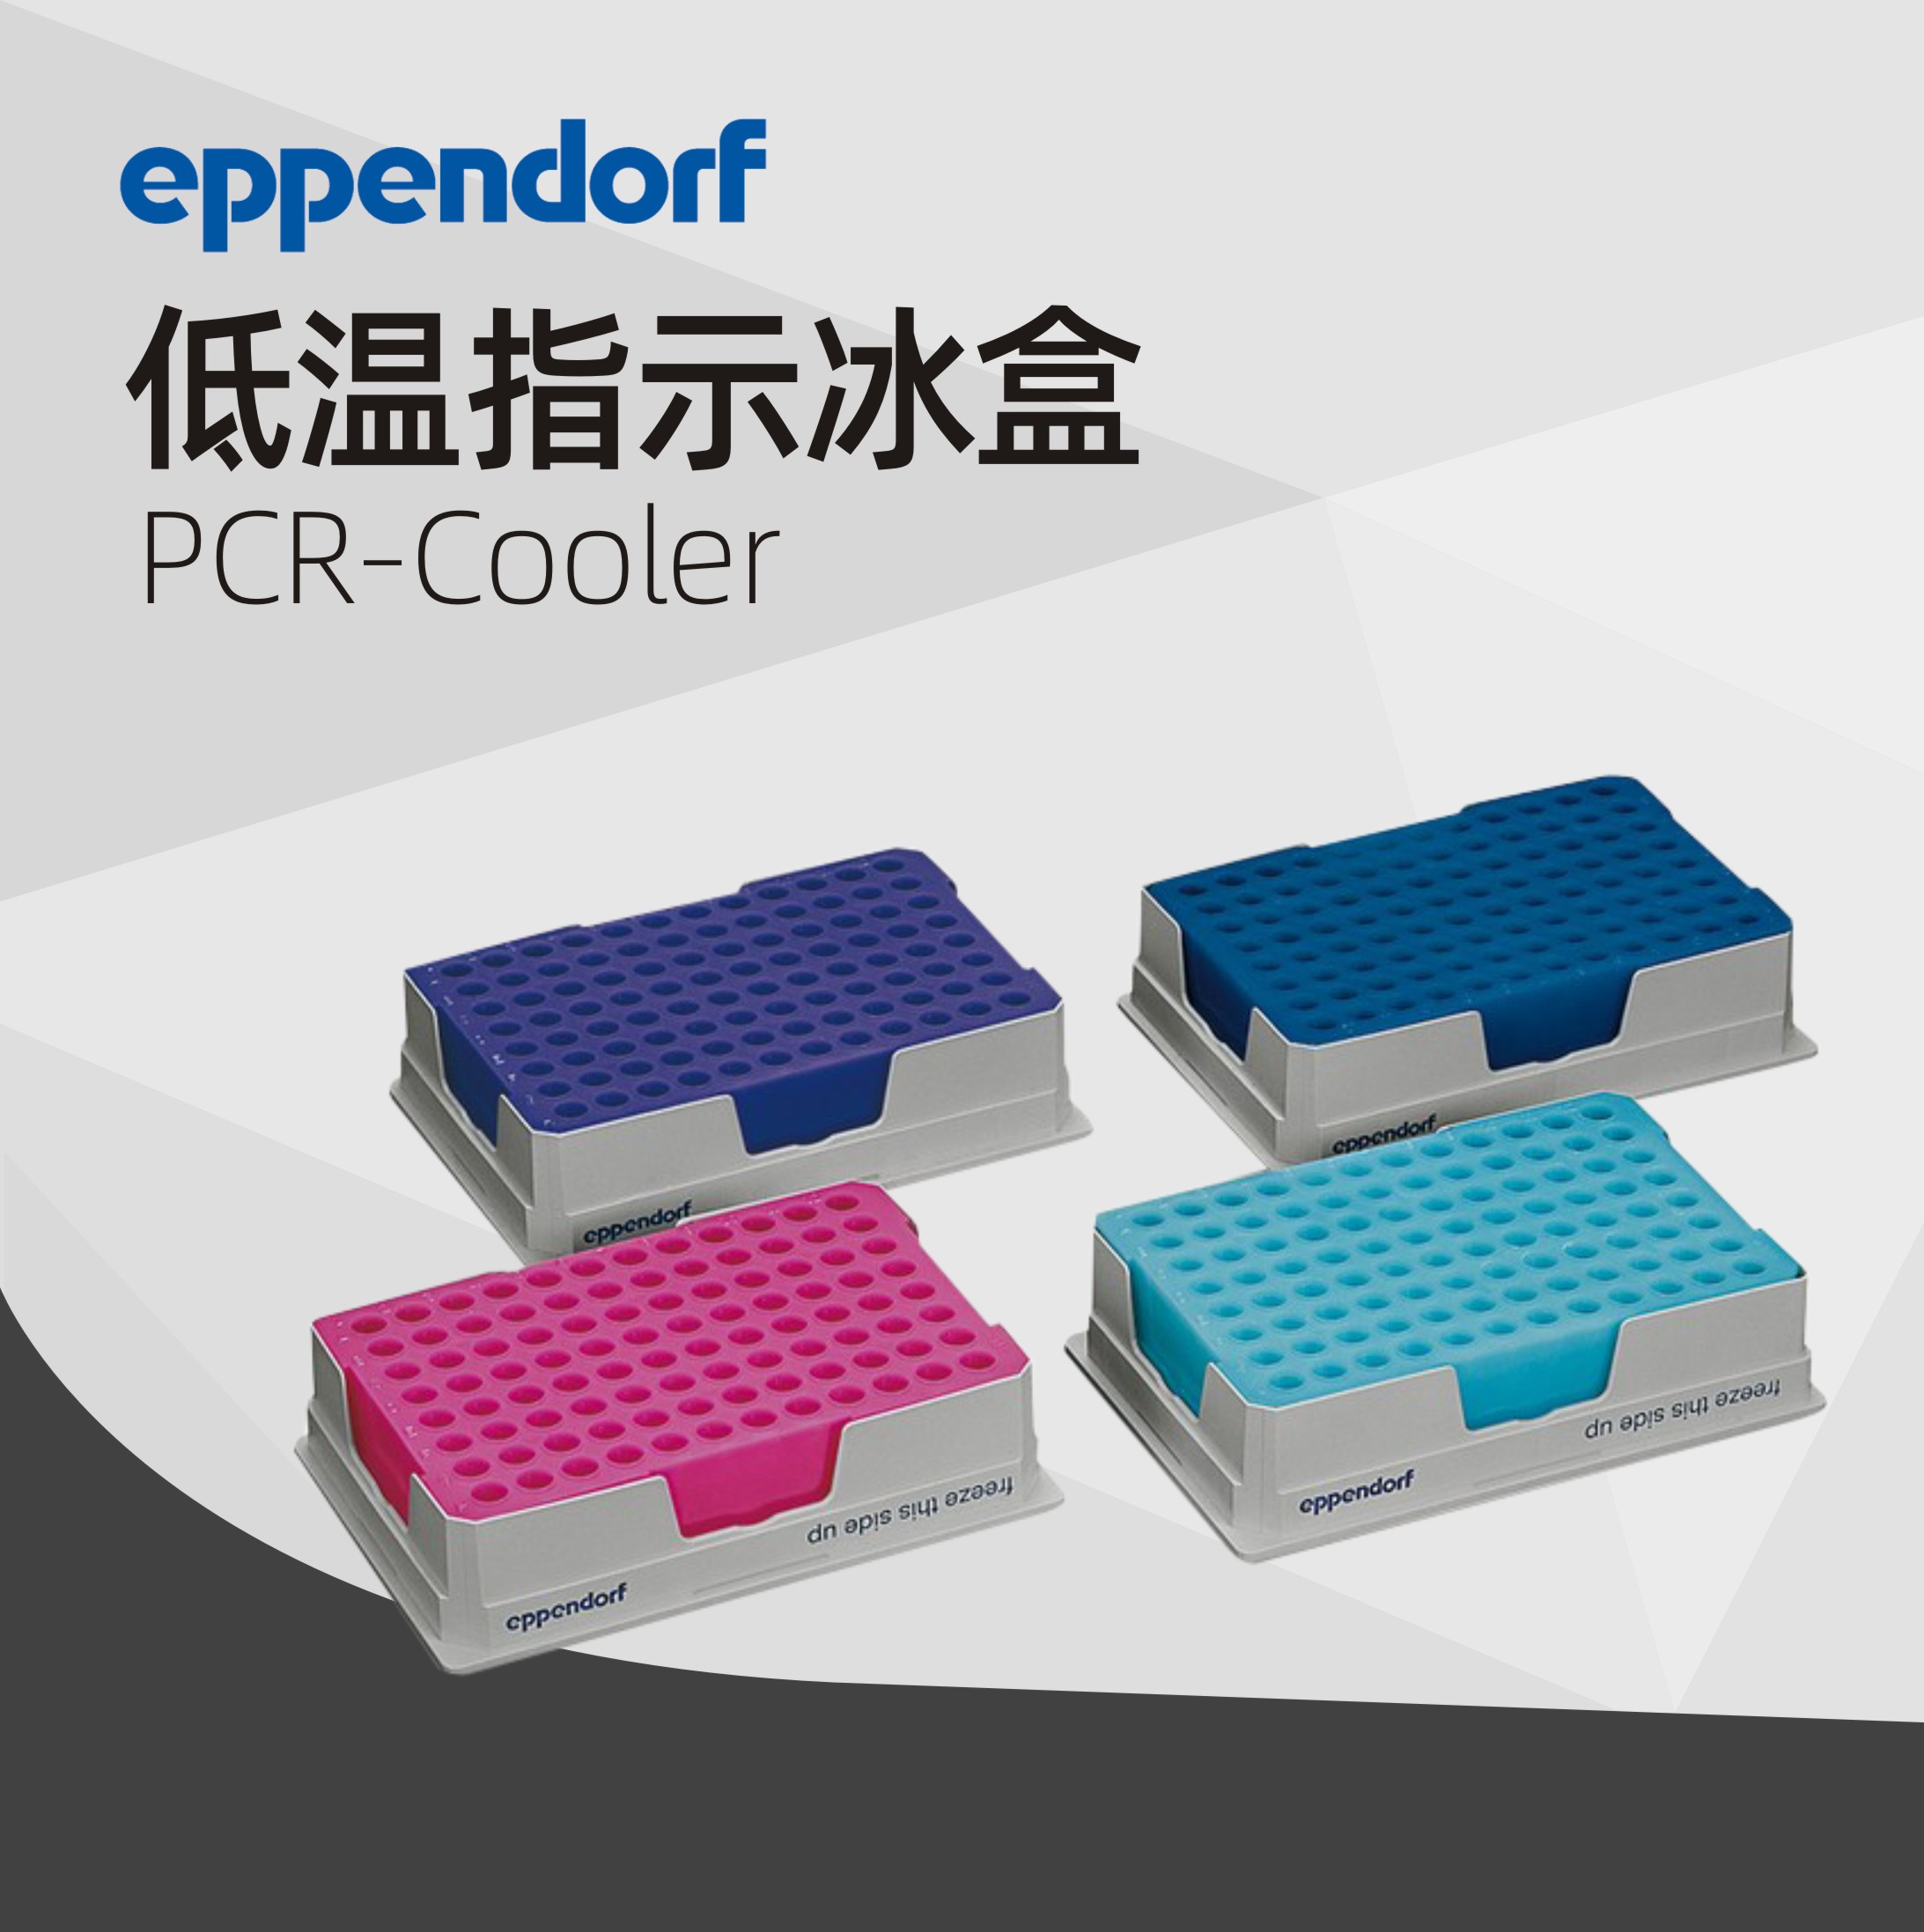 德國艾本德Eppendorf PCR-Cooler (0.2 mL) 低溫指示冰盒啟動套裝